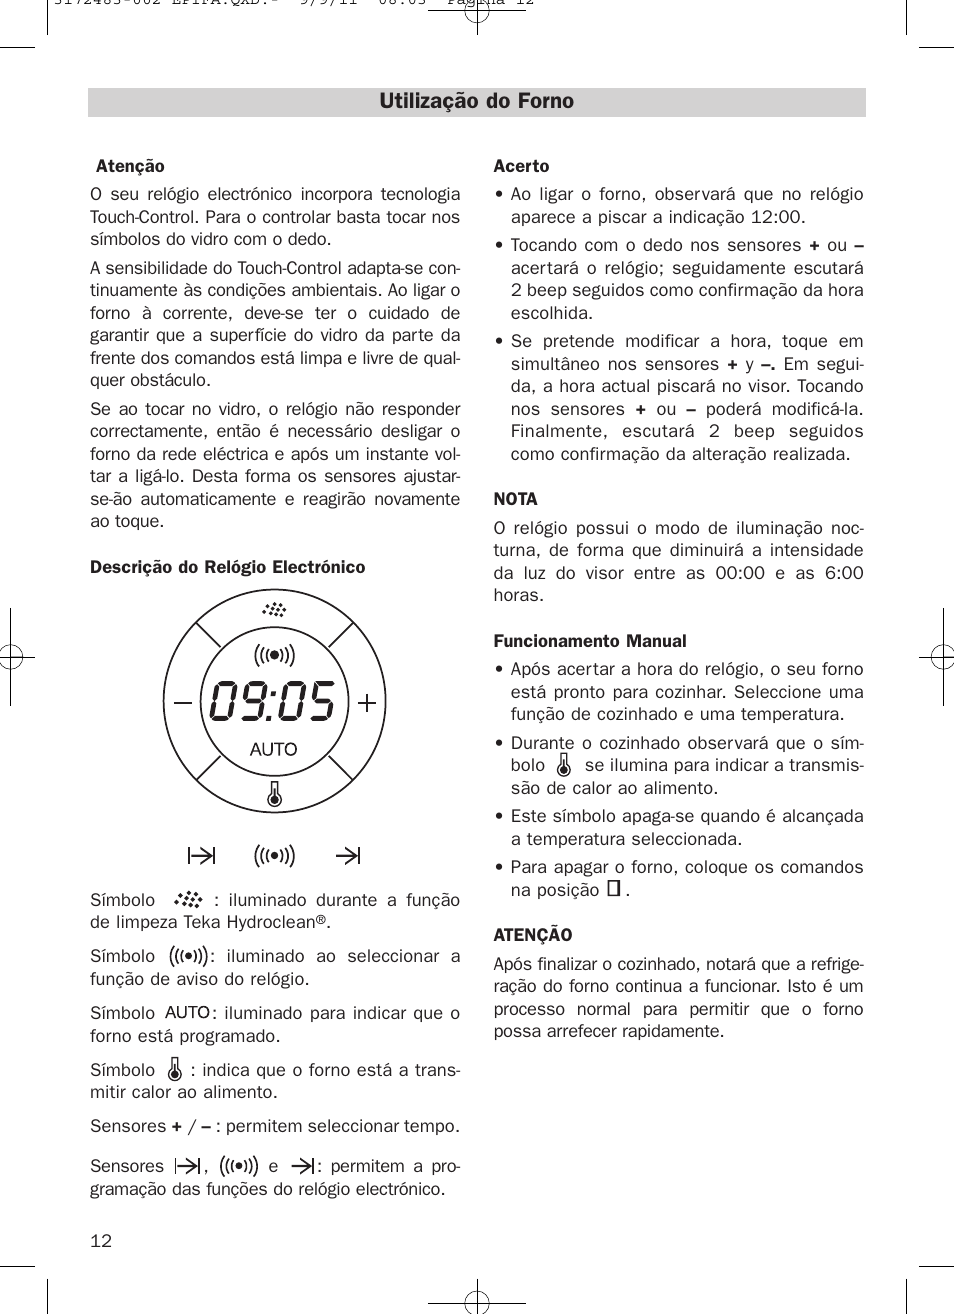 Utilização do forno | Teka Hydroclean HL 840 User Manual | Page 12 / 40 |  Original mode